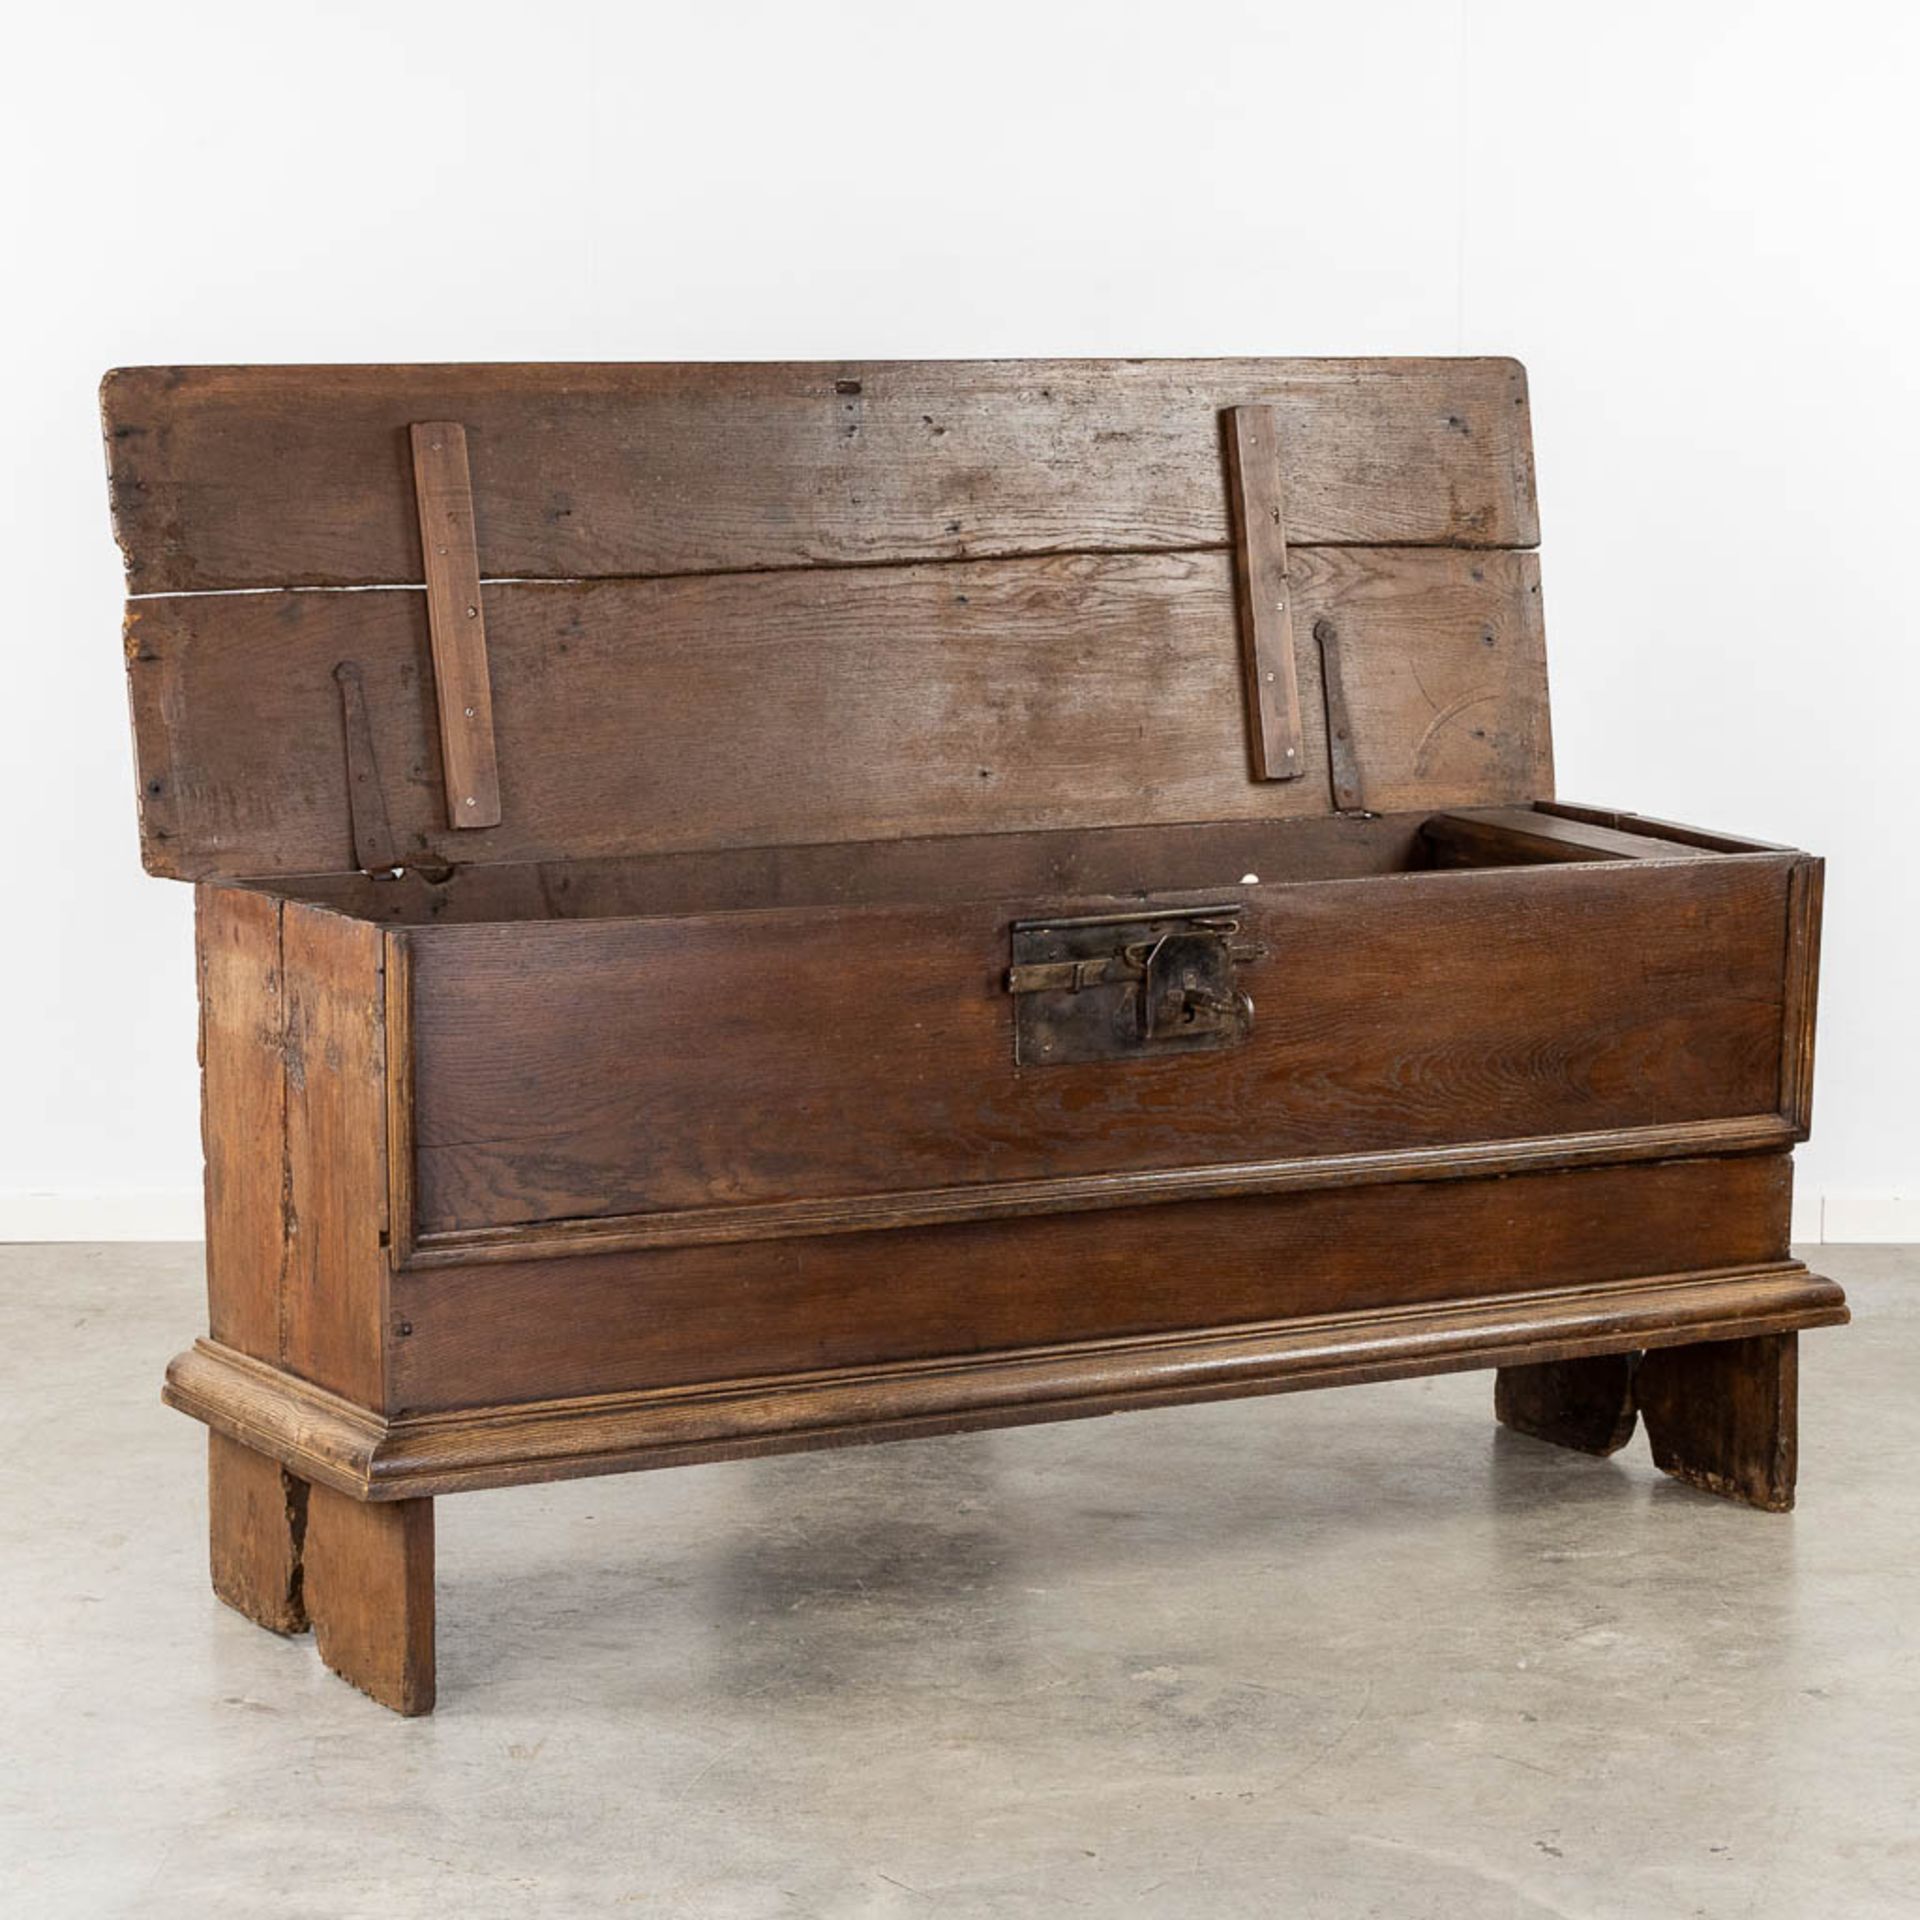 An antique chest. (L:54 x W:176 x H:80 cm) - Bild 3 aus 16